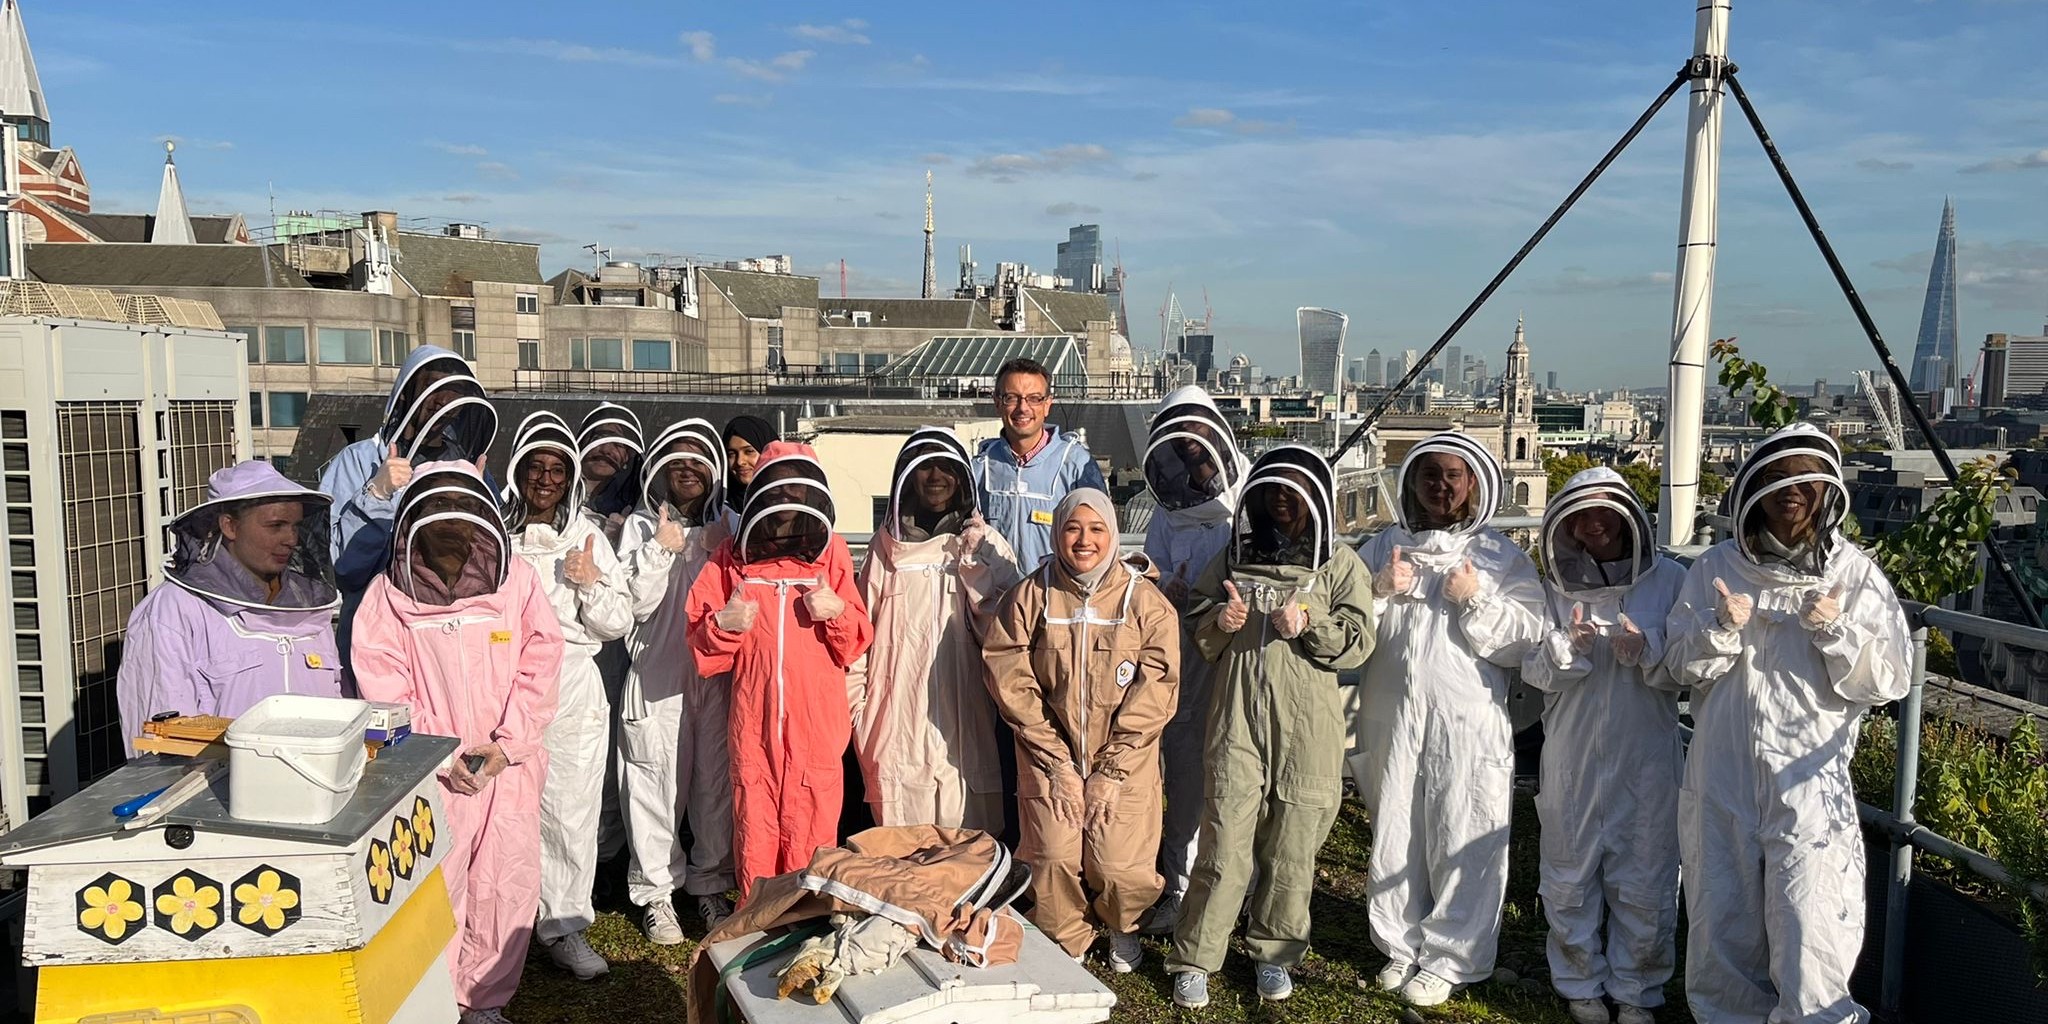 Beekeeping society (1) 1200 x 600